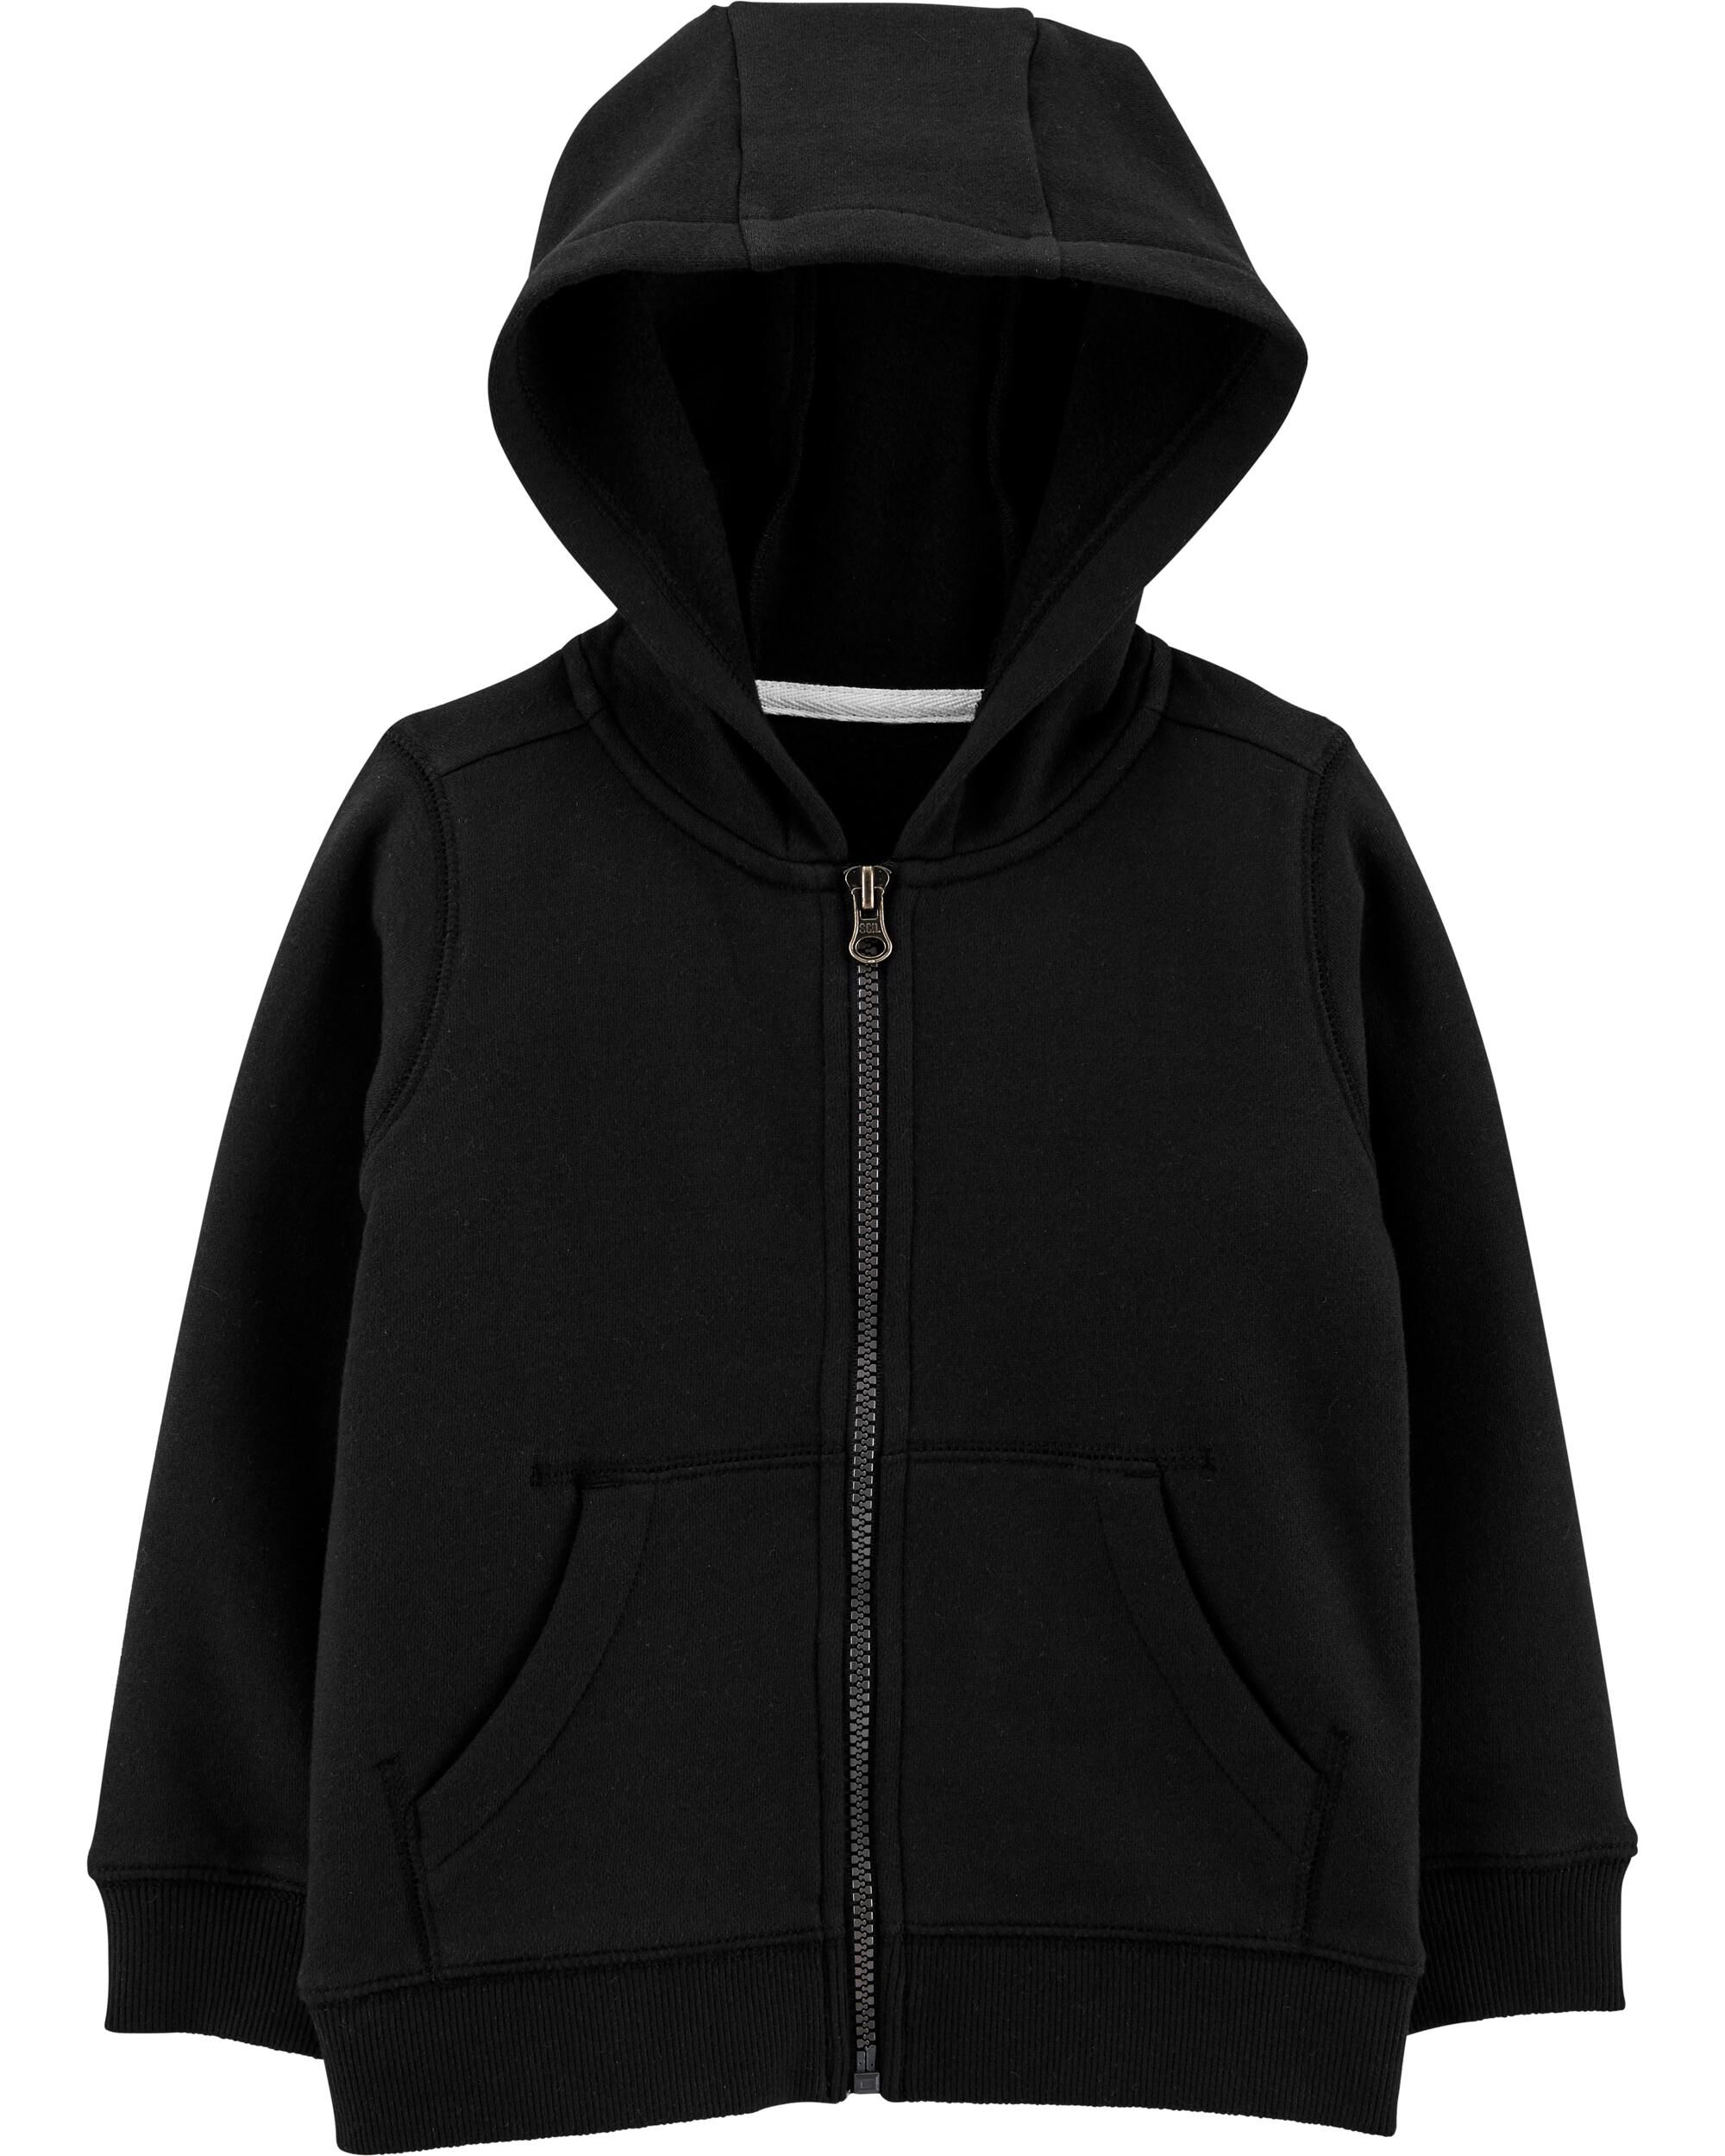 zip up fleece lined hoodie